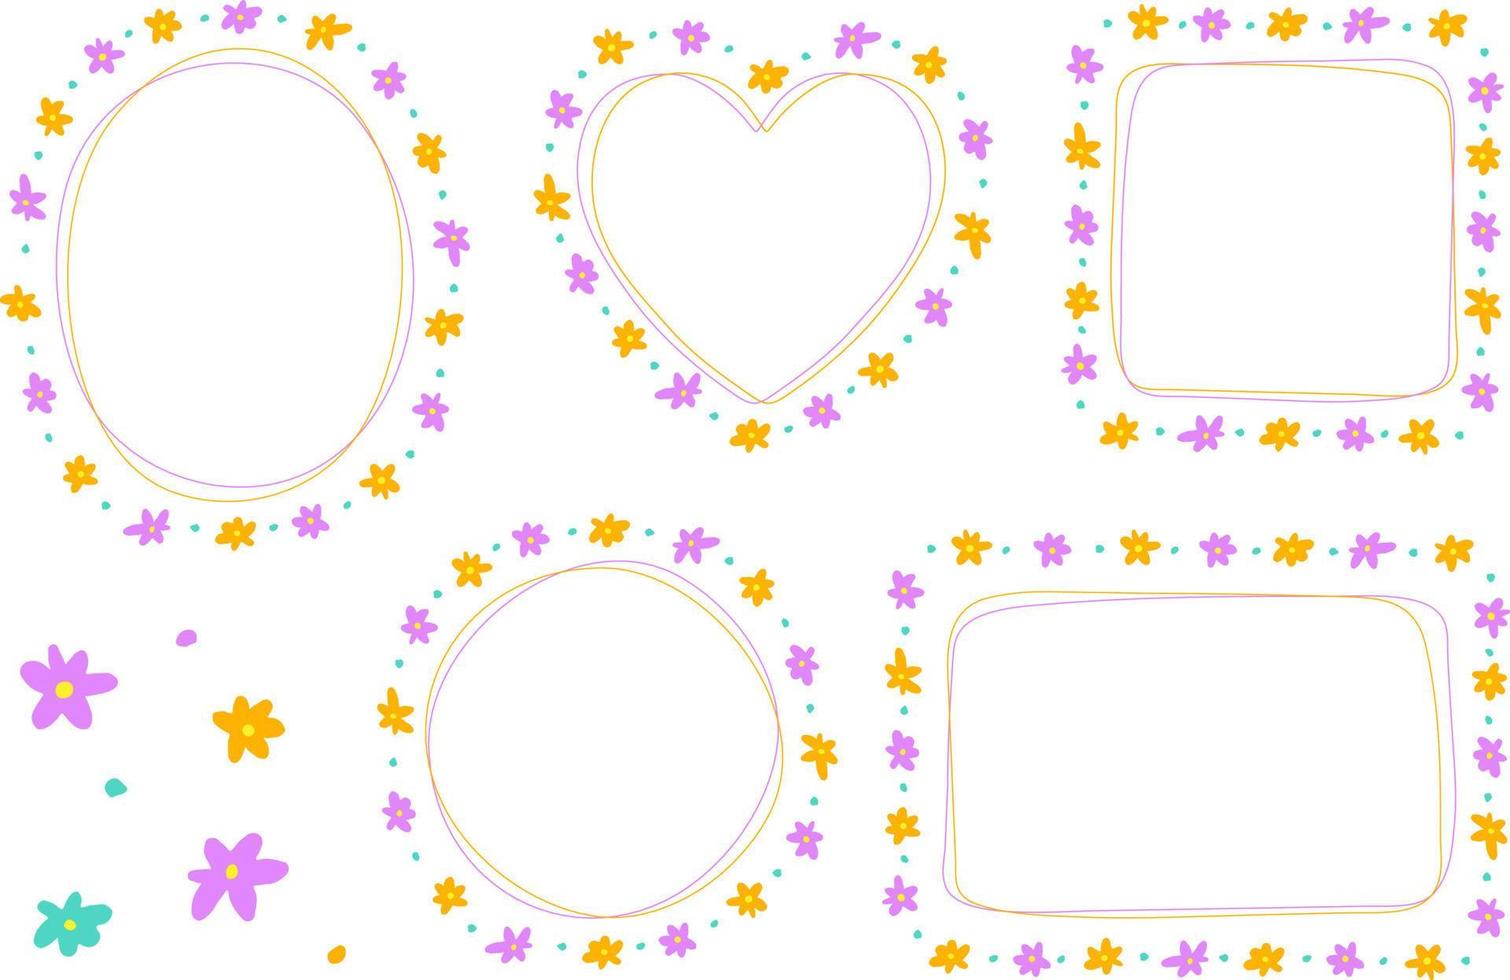 abstract paars violet oranje helder madeliefje bloem doodle hand tekening getrokken hart cirkel vierkant ovaal rechthoek kleverige nota vorm lijn grenzen frames plaat set collectie achtergrond vectorillustratie vector